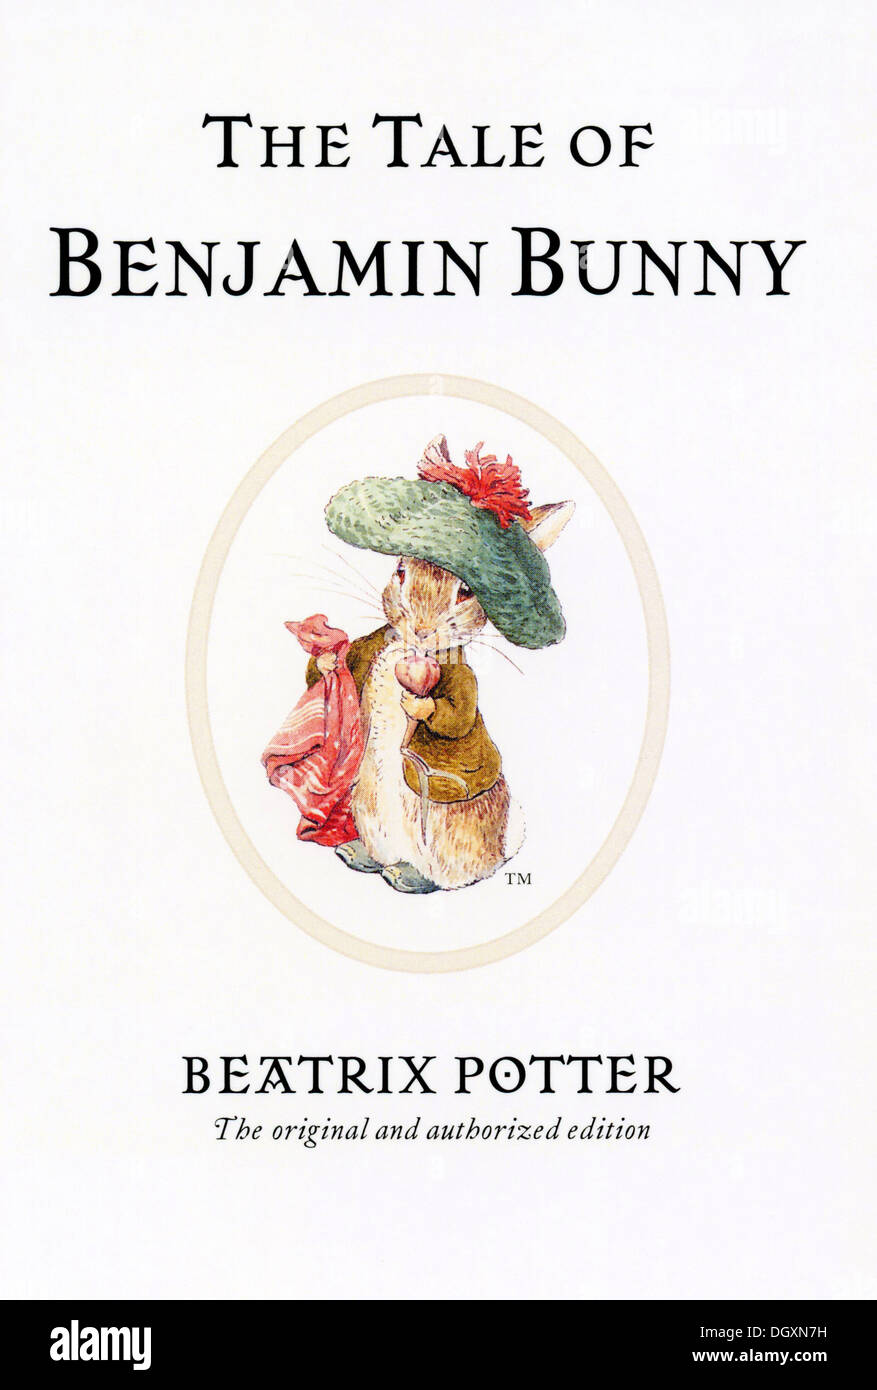 Beatrix Potter - La storia di Benjamin Bunny copertina del libro, 1904 Foto Stock